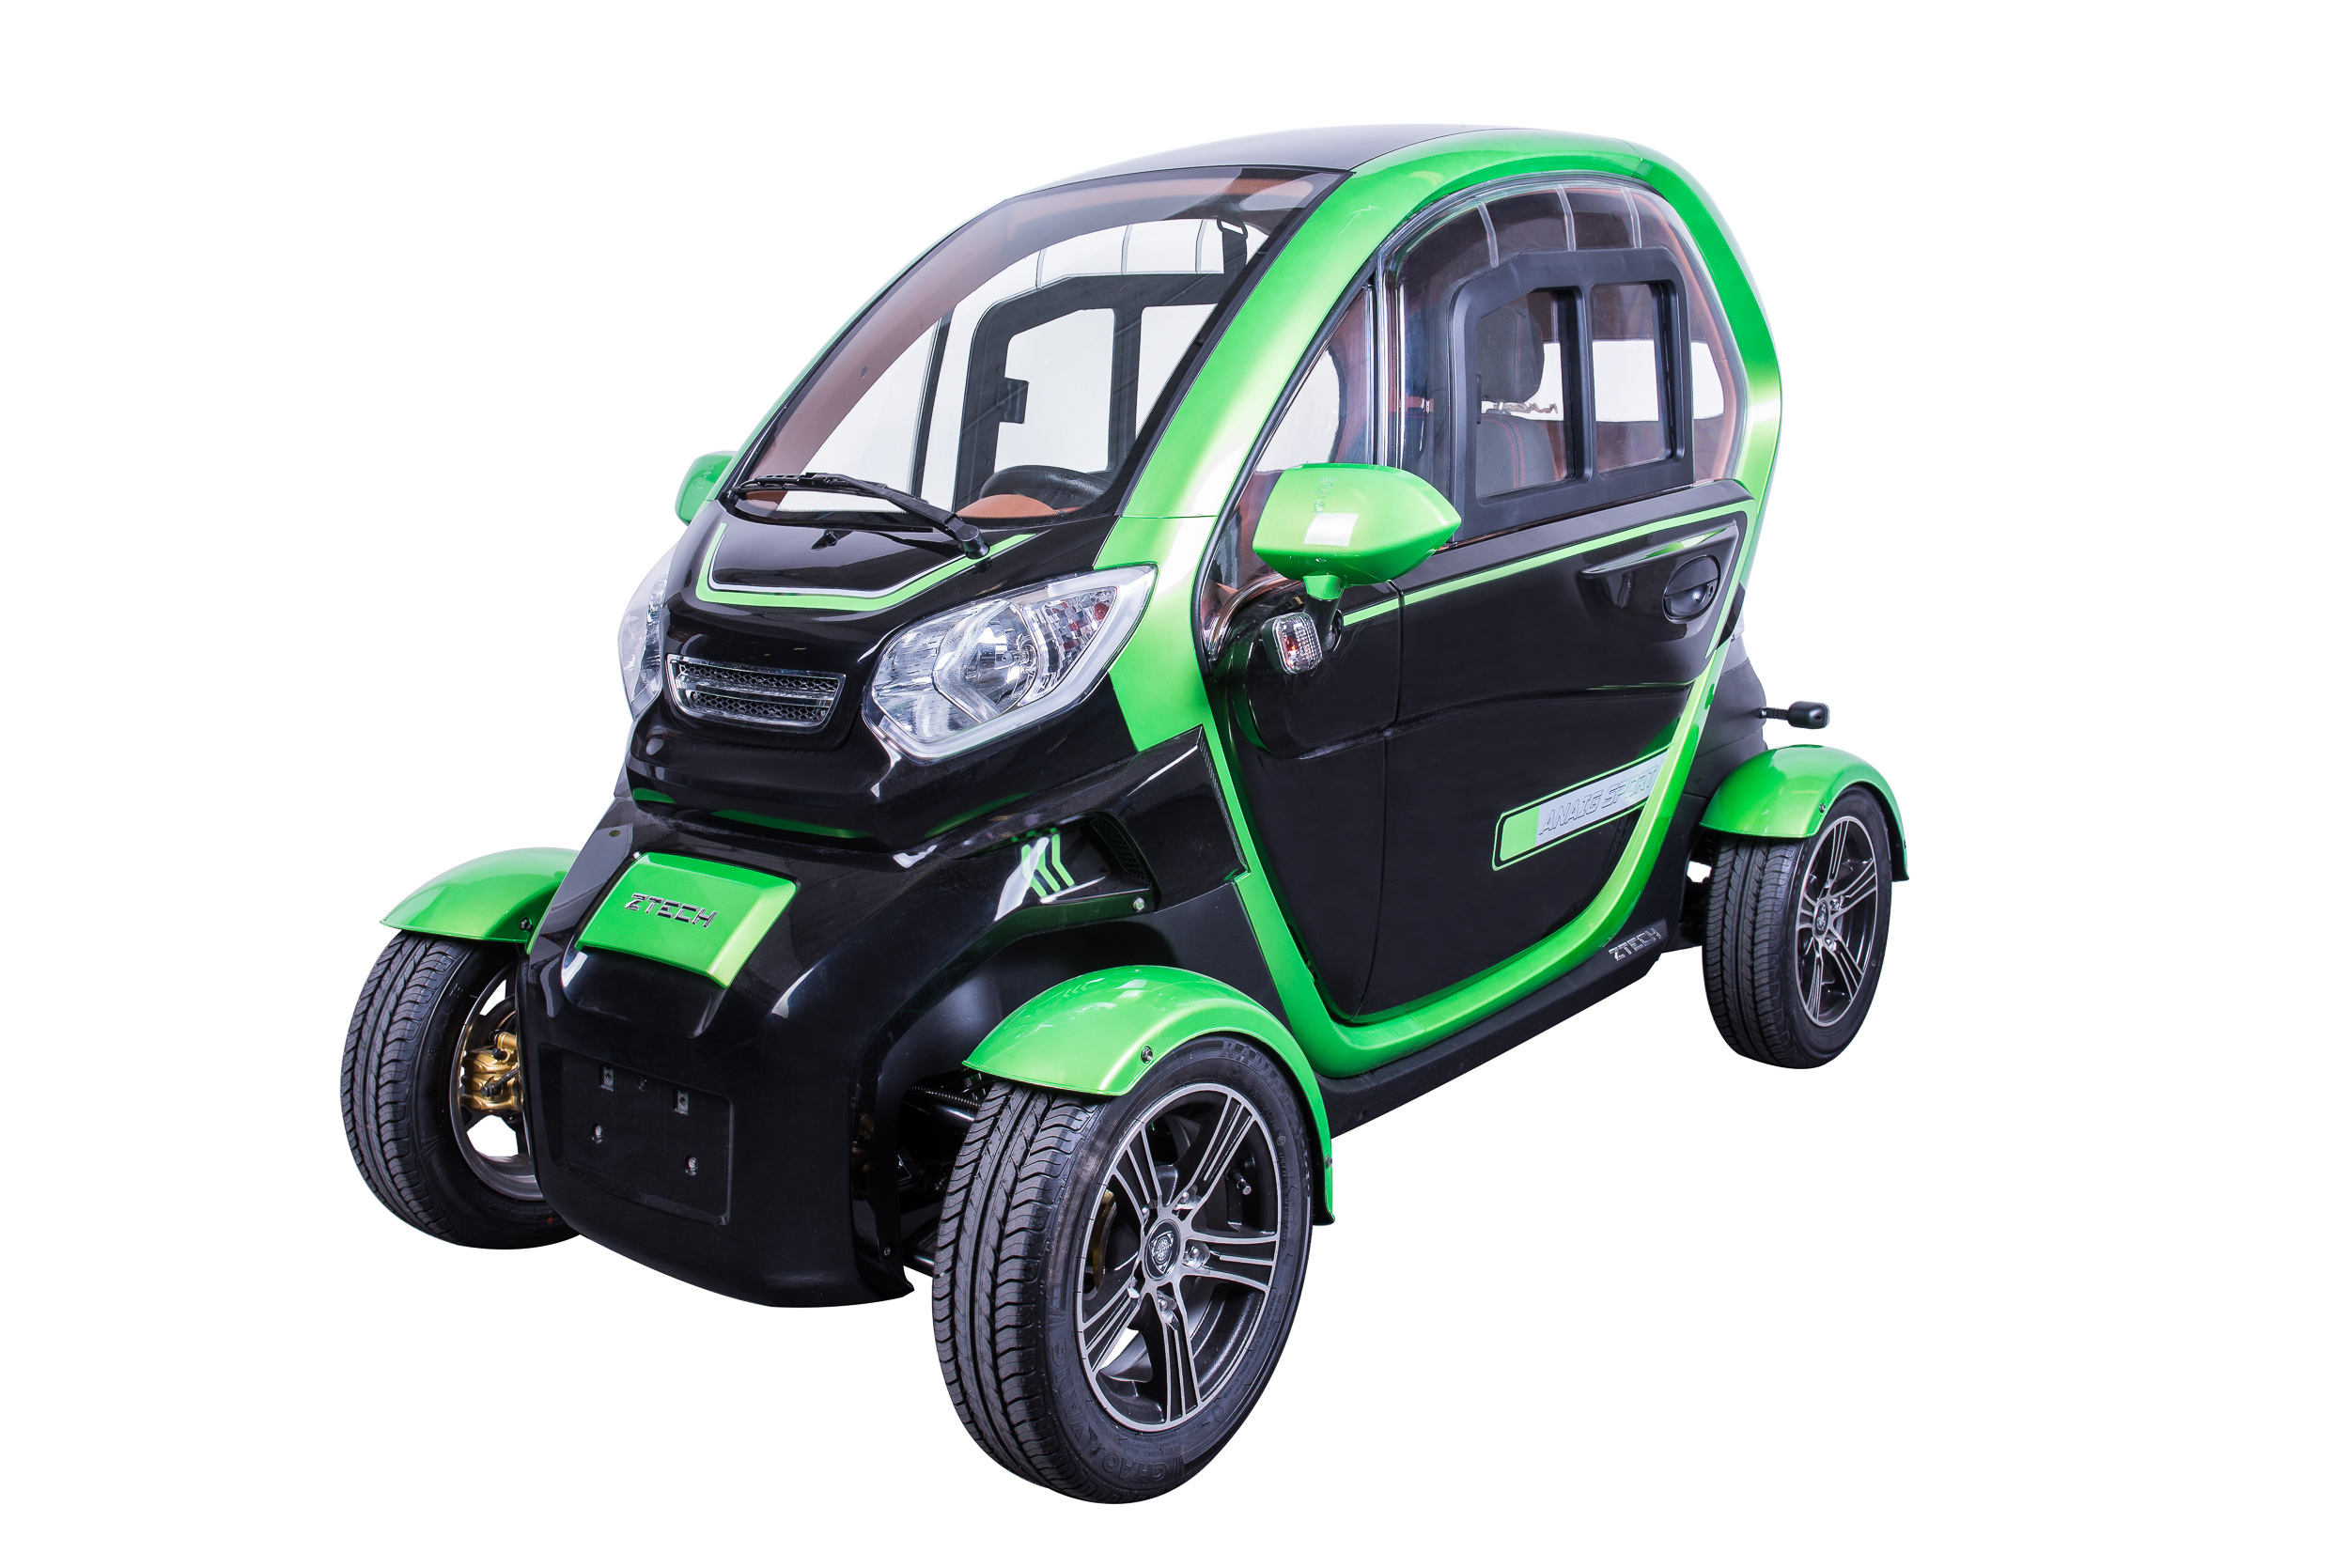 ZT-96 4 kerekű e-moped autó fekete-zöld